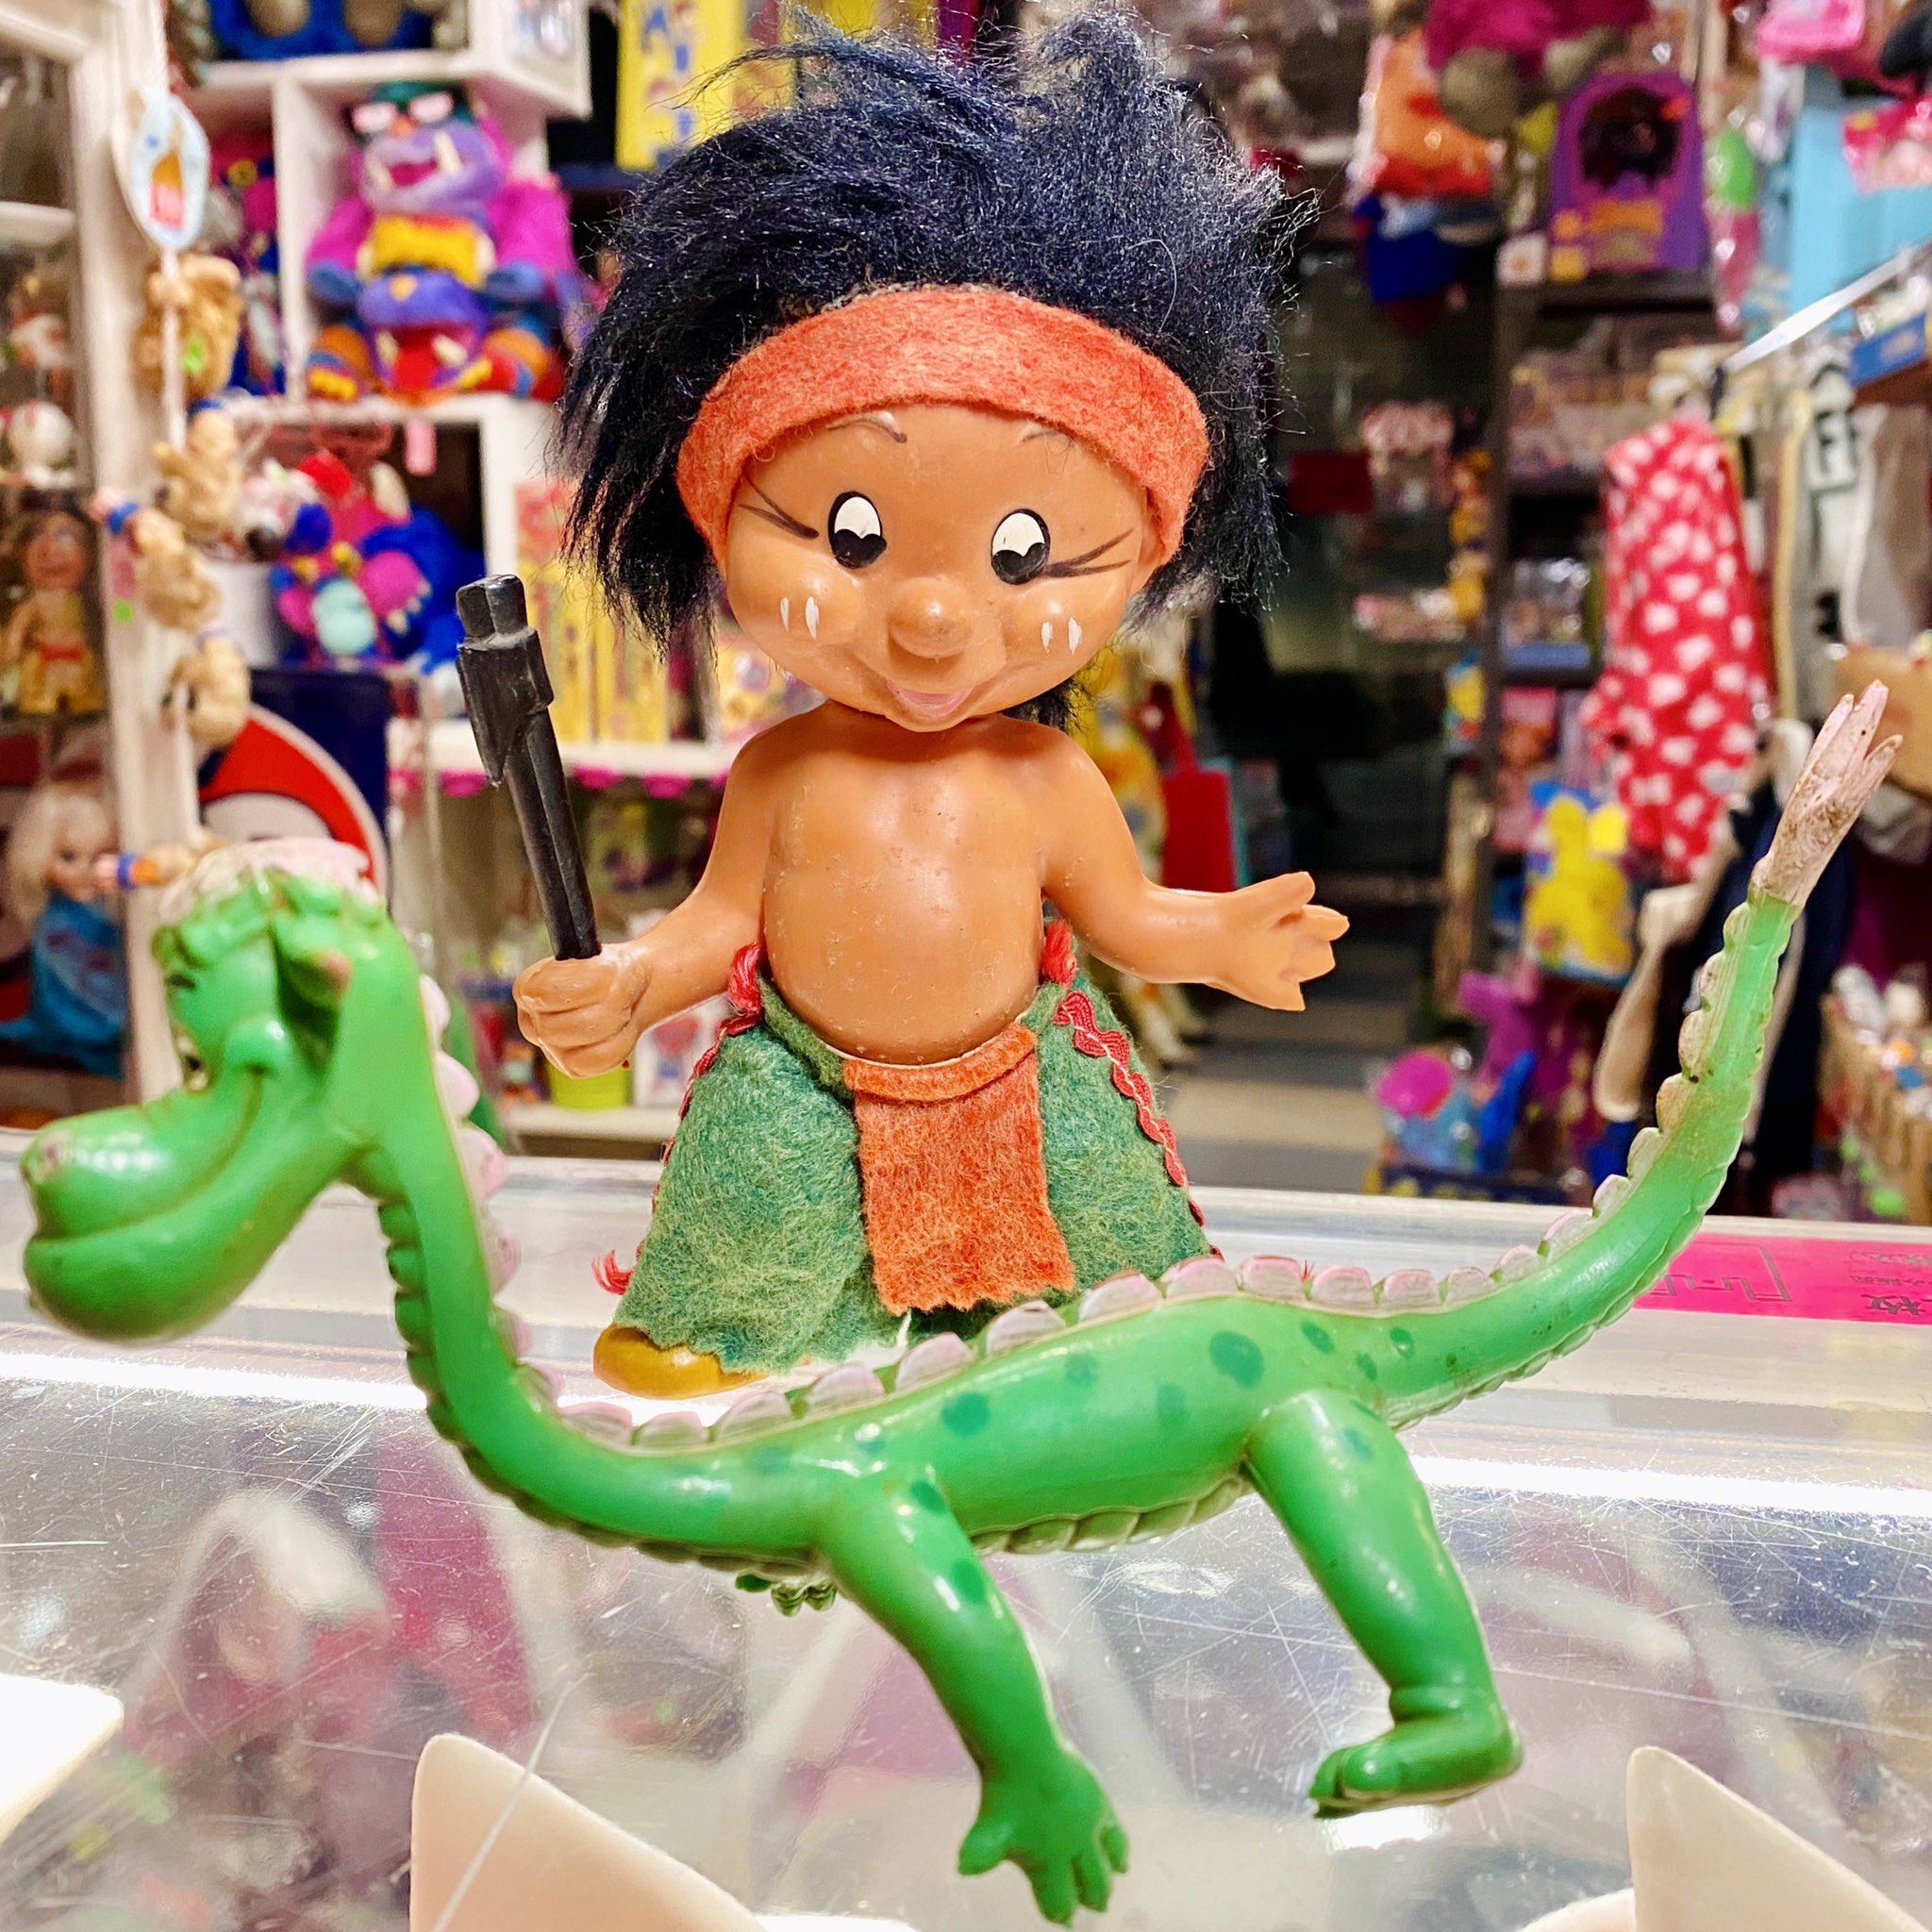 Toy Collectables Rpm Little Hiawatha Pete S Dragon 小さなインディアン ハイアワサ フィギュア 1968年製 大きさ約16cm ピートとドラゴンのドラゴン ベンダブル 1970年代製 全長22cm ご注文やお問い合わせはメールやdmにてお気軽にご連絡ください